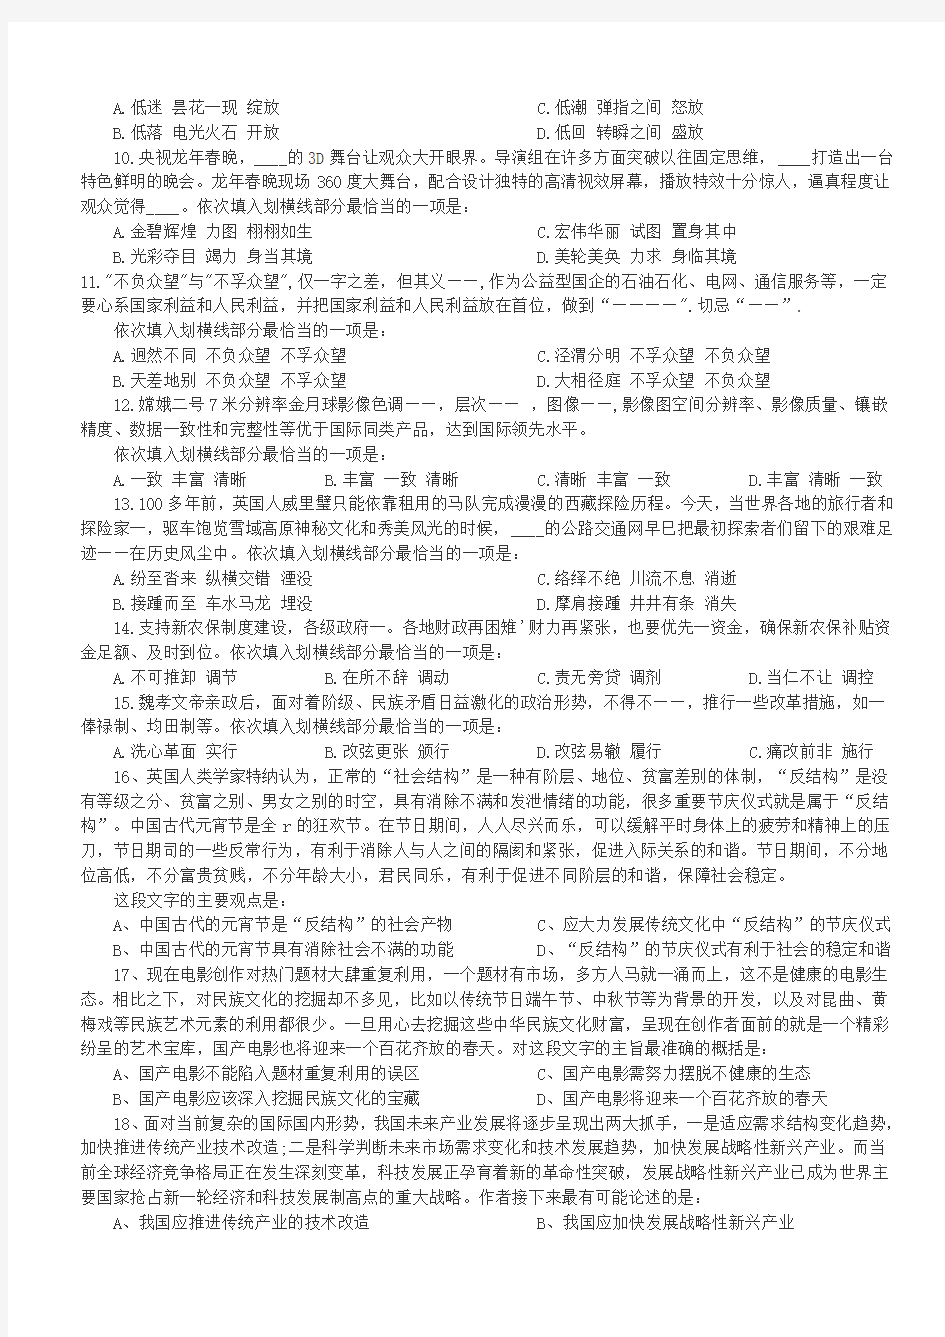 2012年天津公务员考试行政能力测试真题【完整+答案+解析】